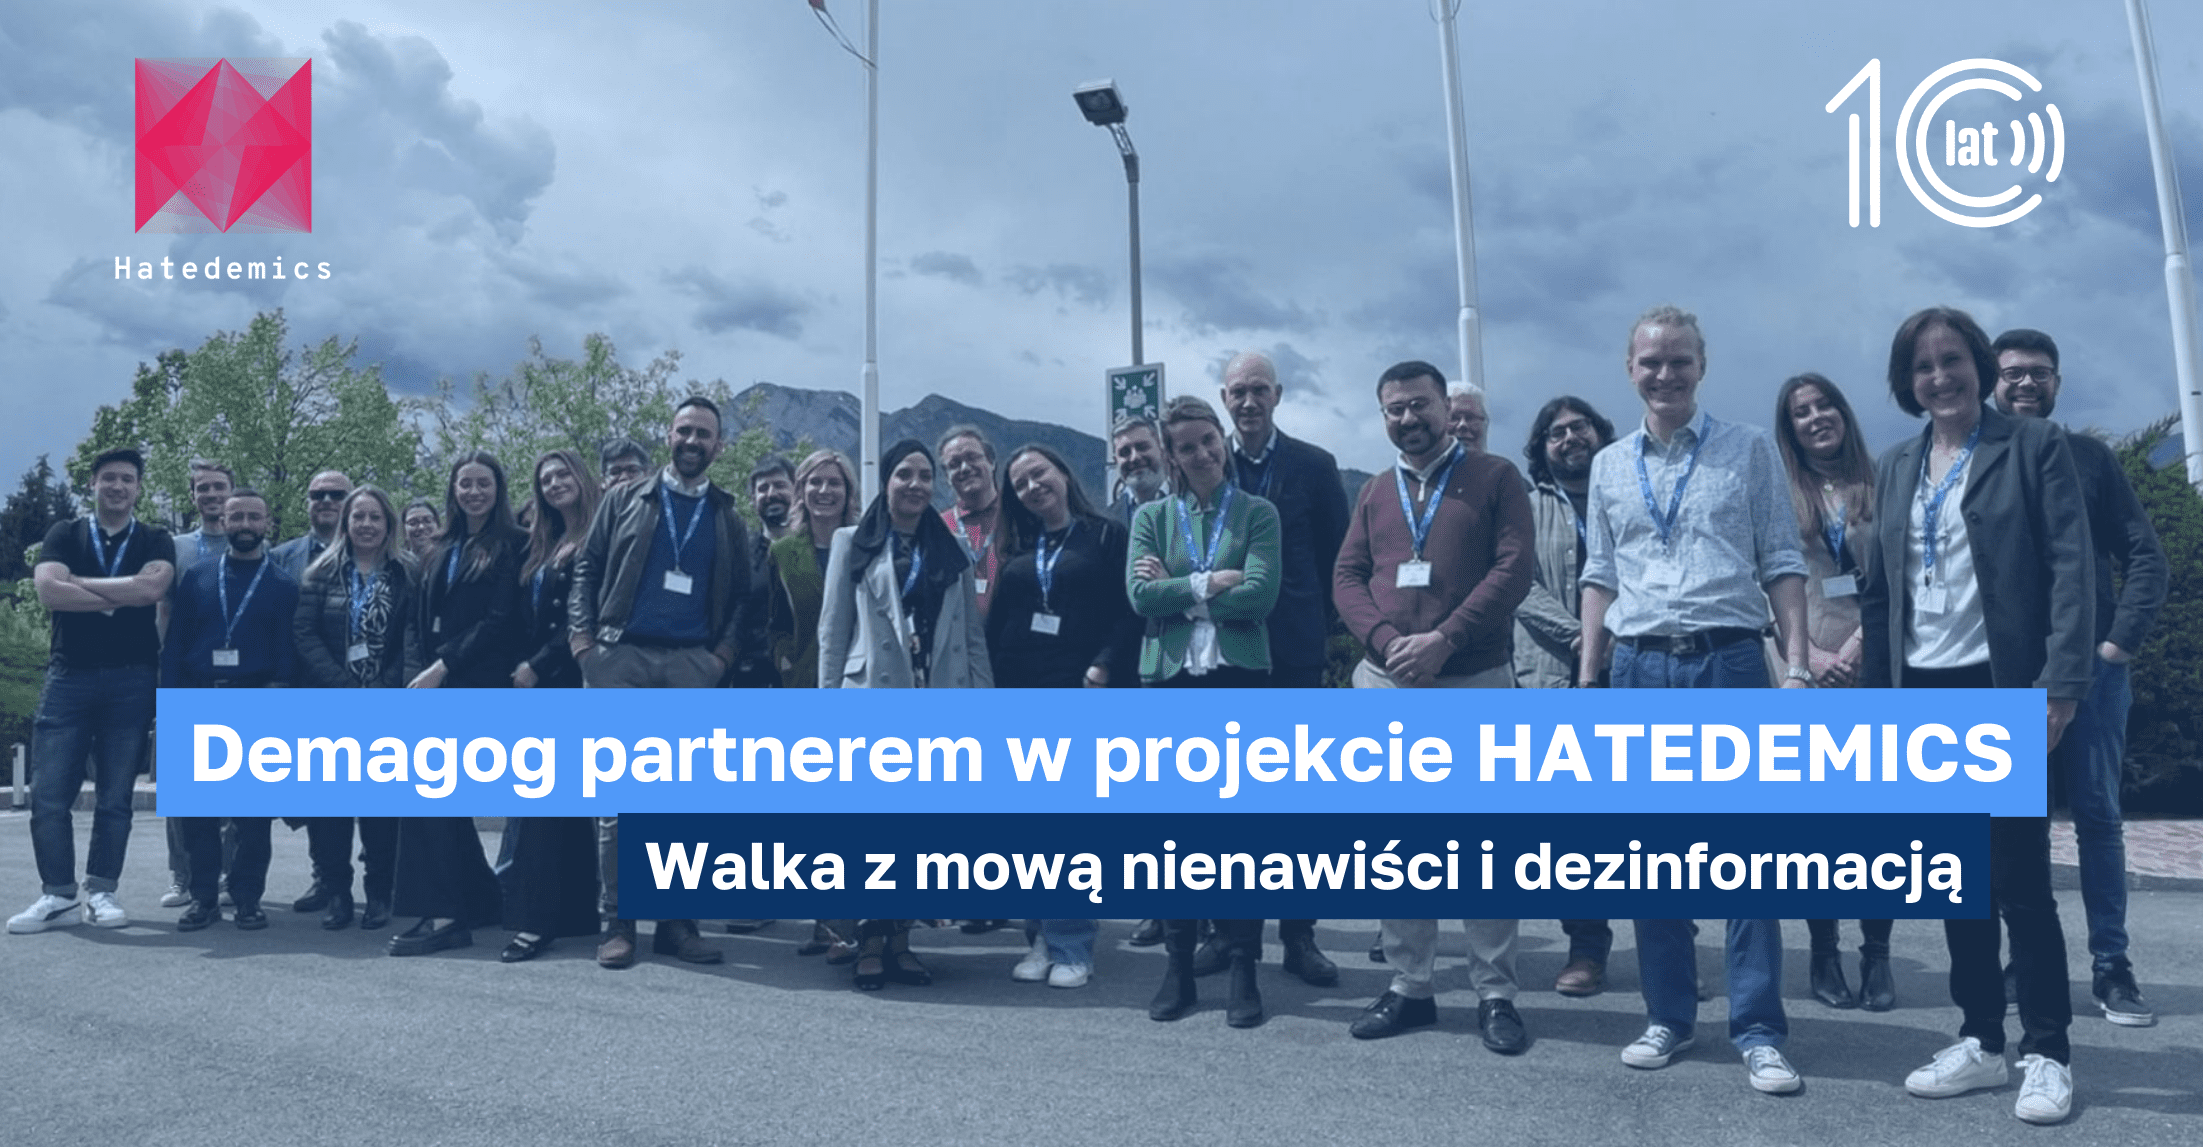 Partnerstwo Demagoga w projekcie HATEDEMICS: Walka z mową nienawiści i dezinformacją